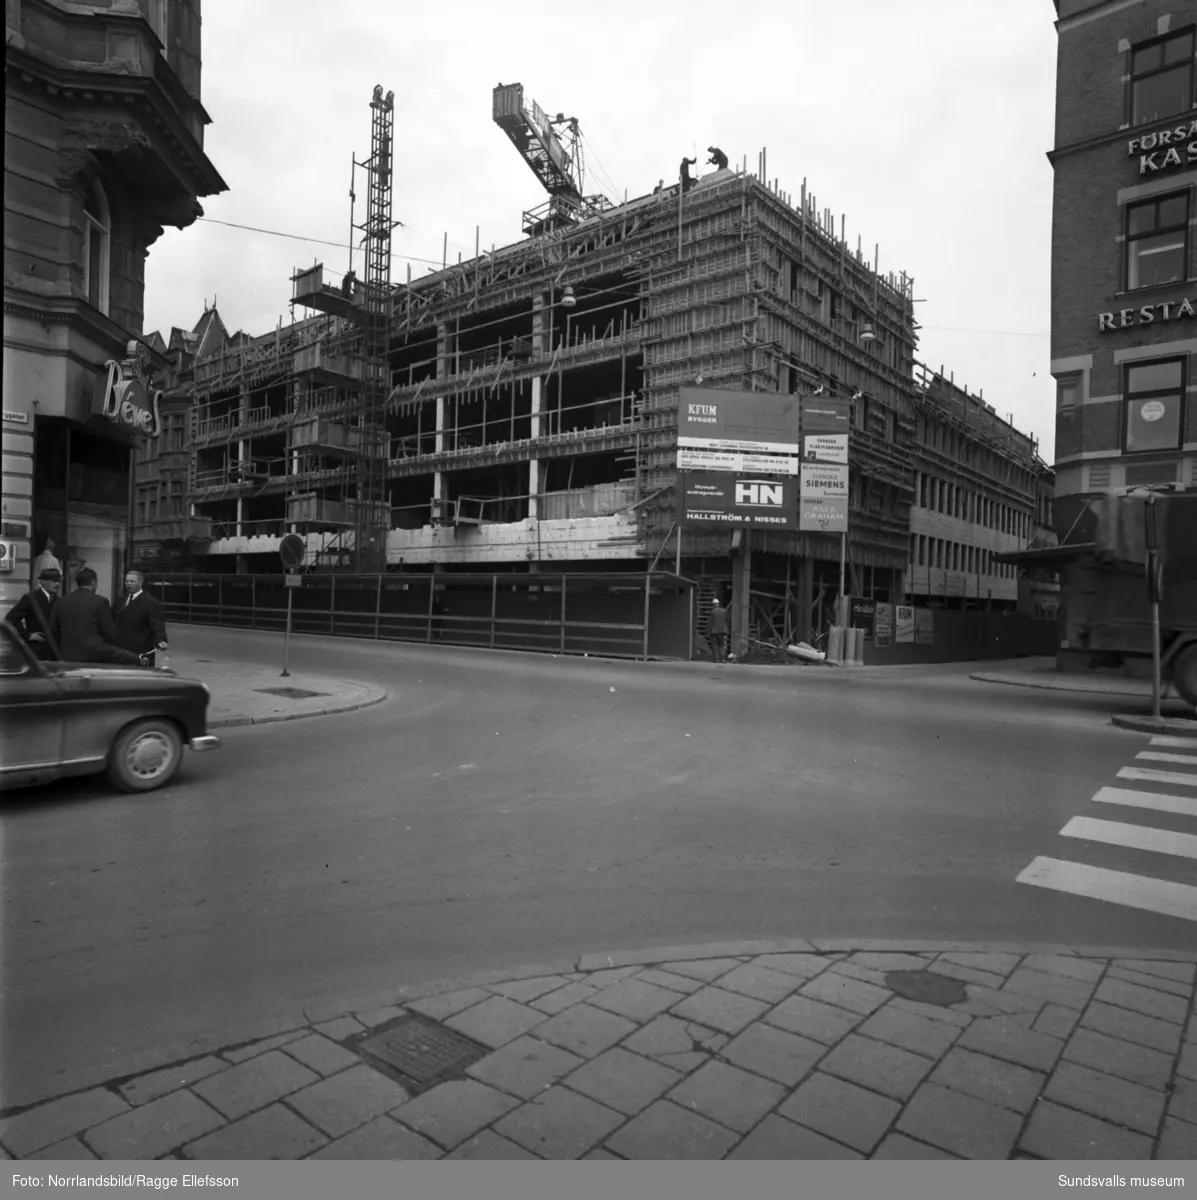 Bygget av varuhuset Tempo i kvarteret Glädjen växer fram. Varuhuset invigdes i augusti 1966.